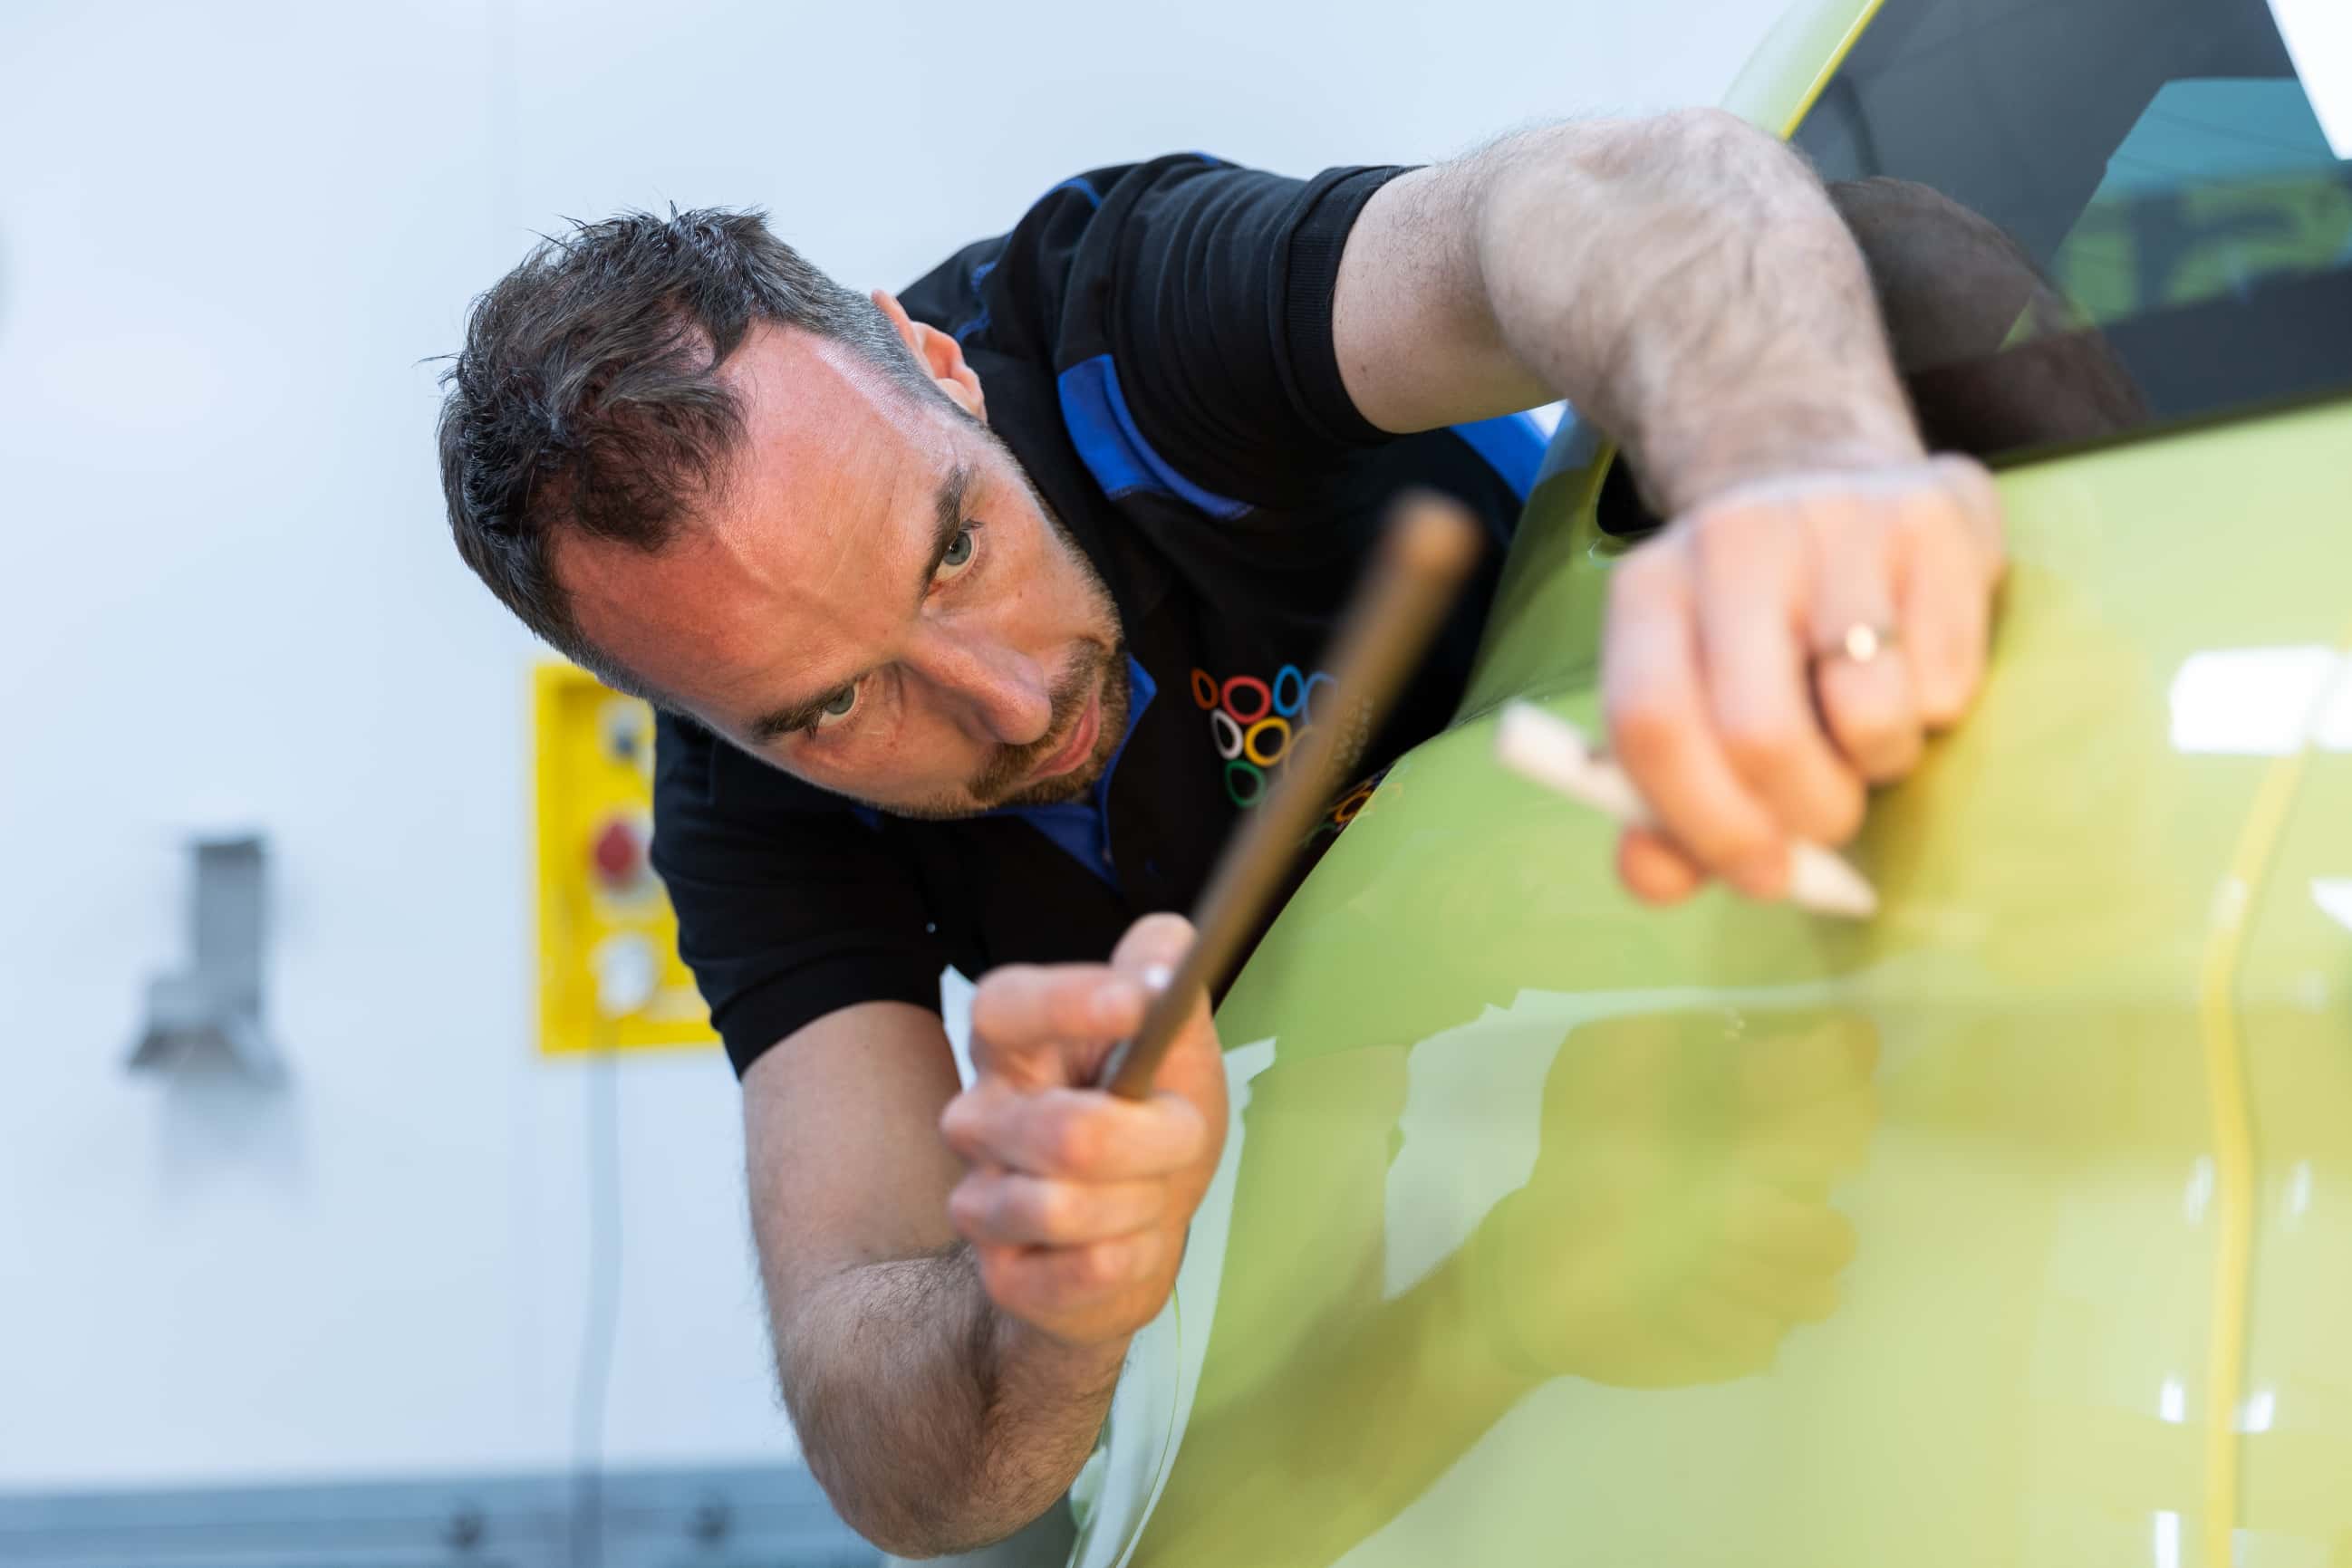 'Marc repareert een geel auto met hulp van de PDR-techniek'